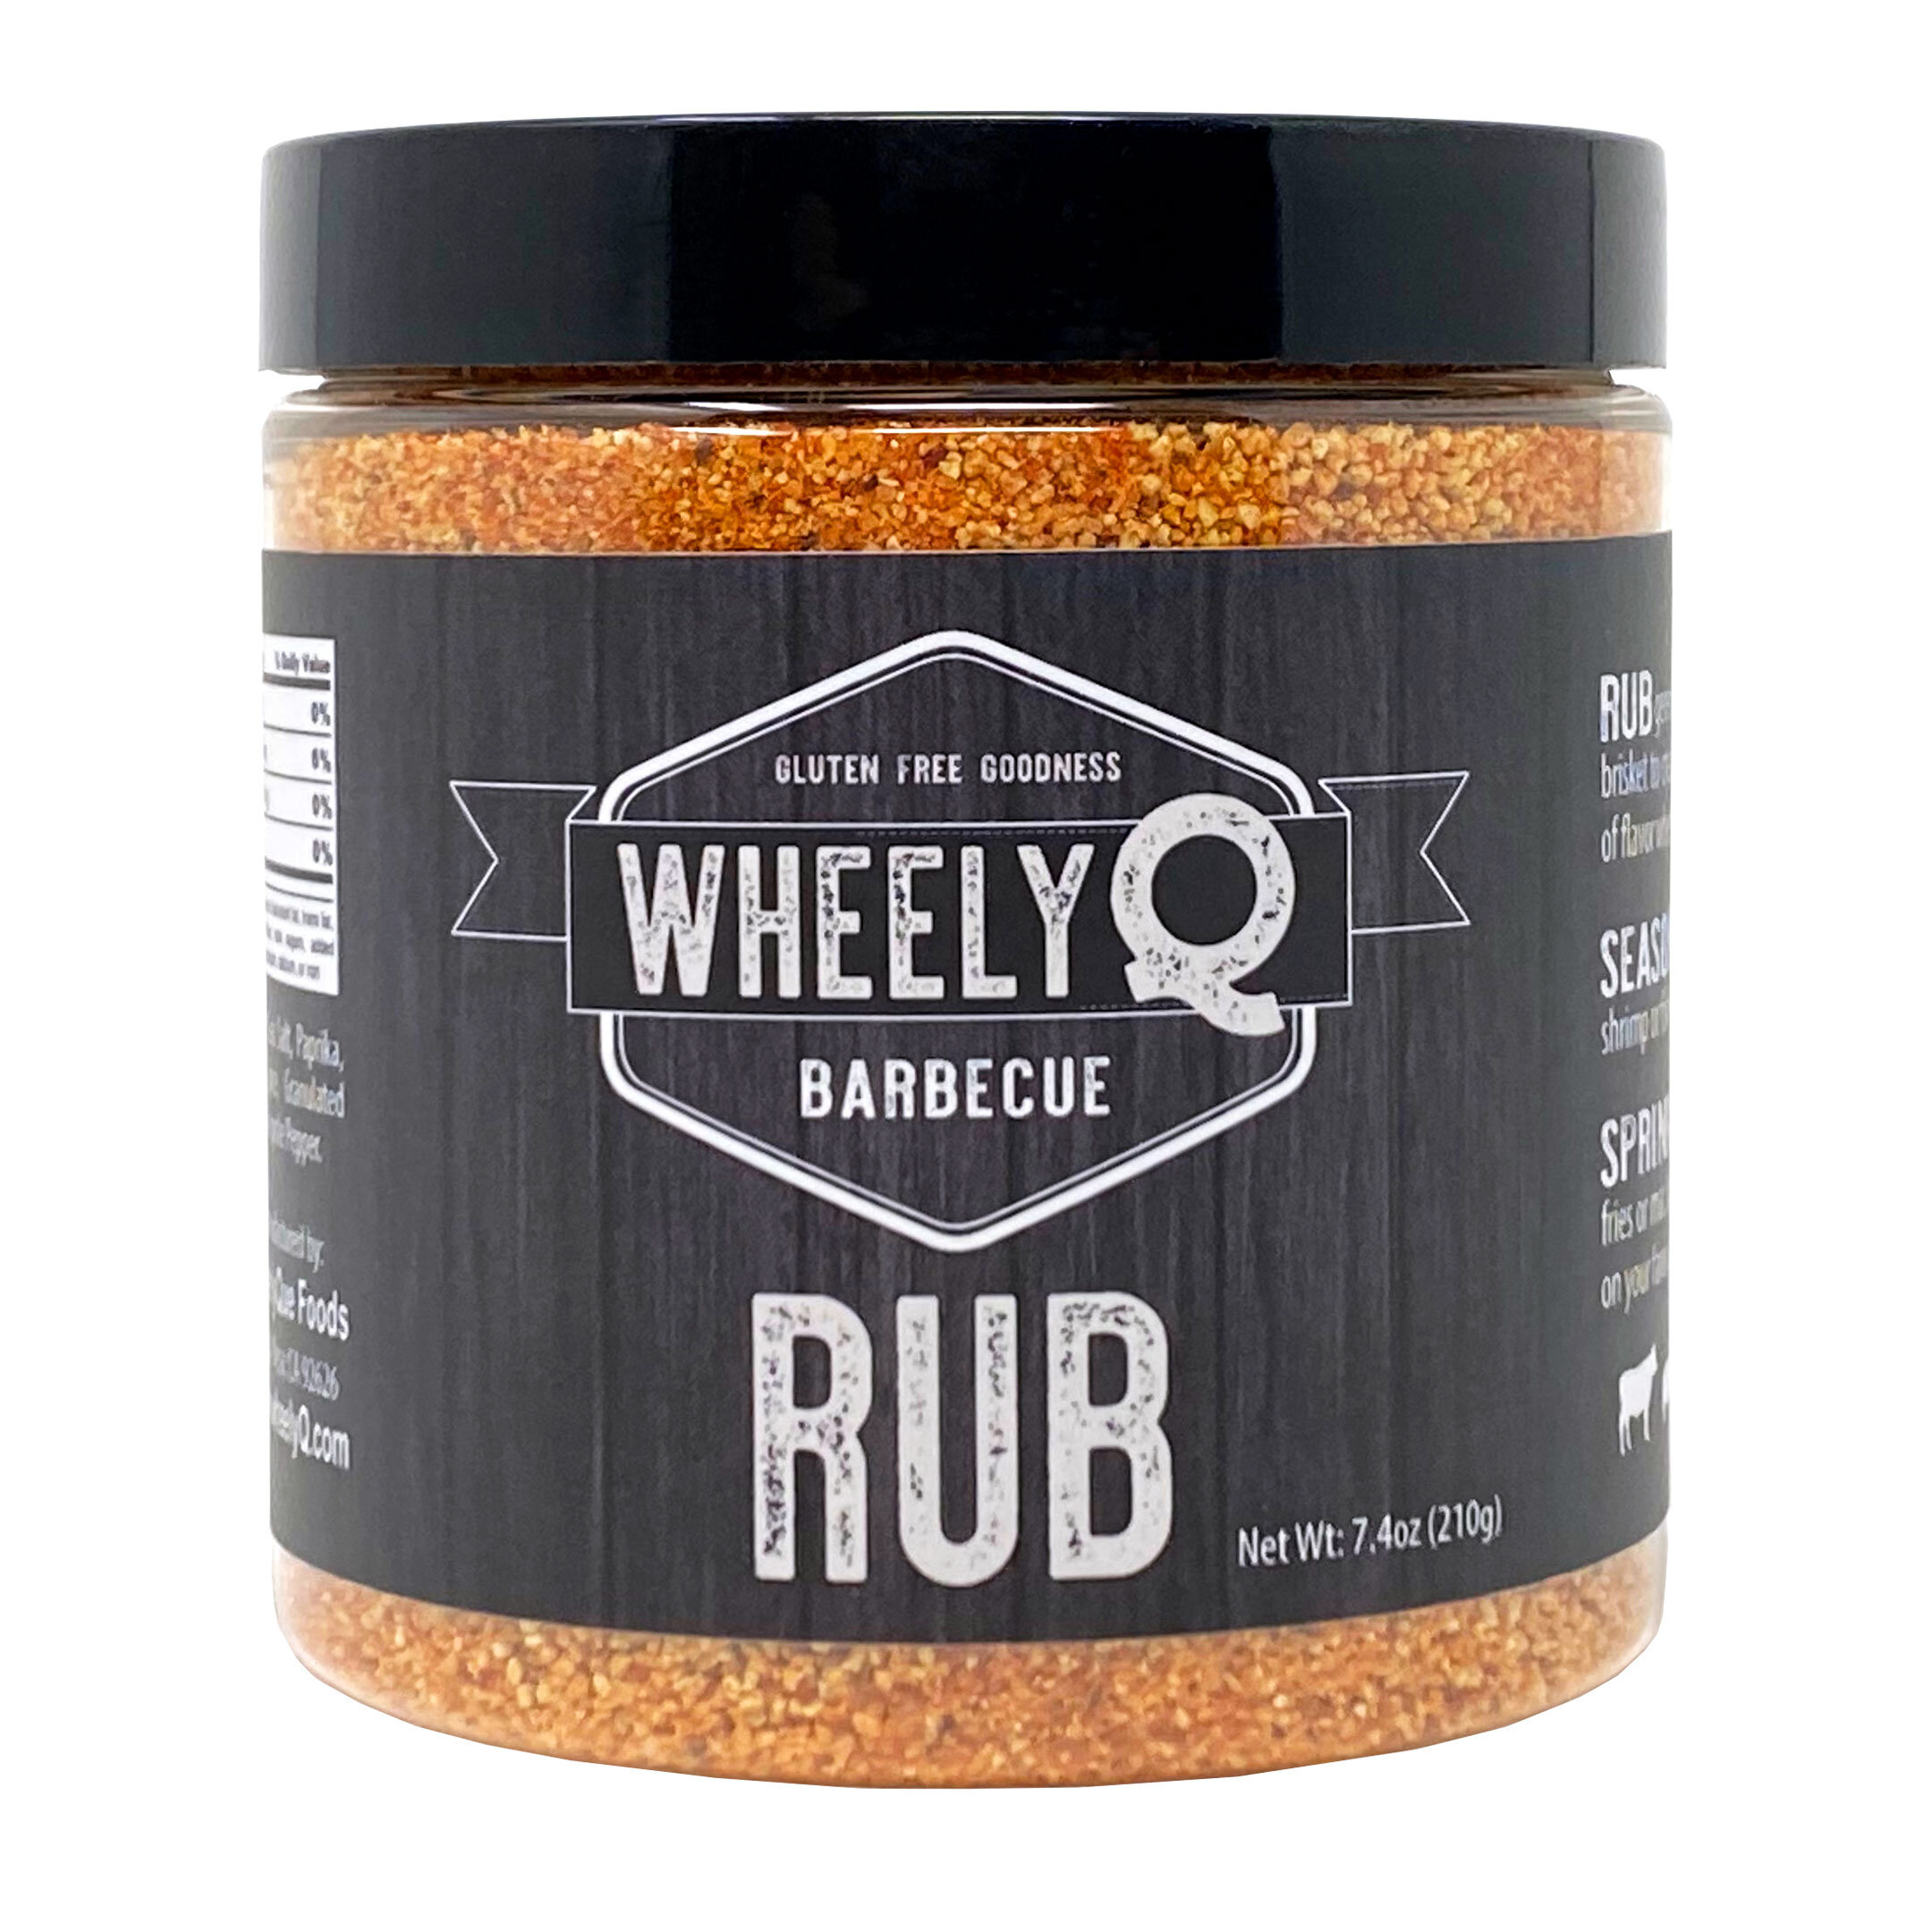 All-Purpose Rub — WheelyQ Barbecue Sauce, Rub and SPG Seasoning